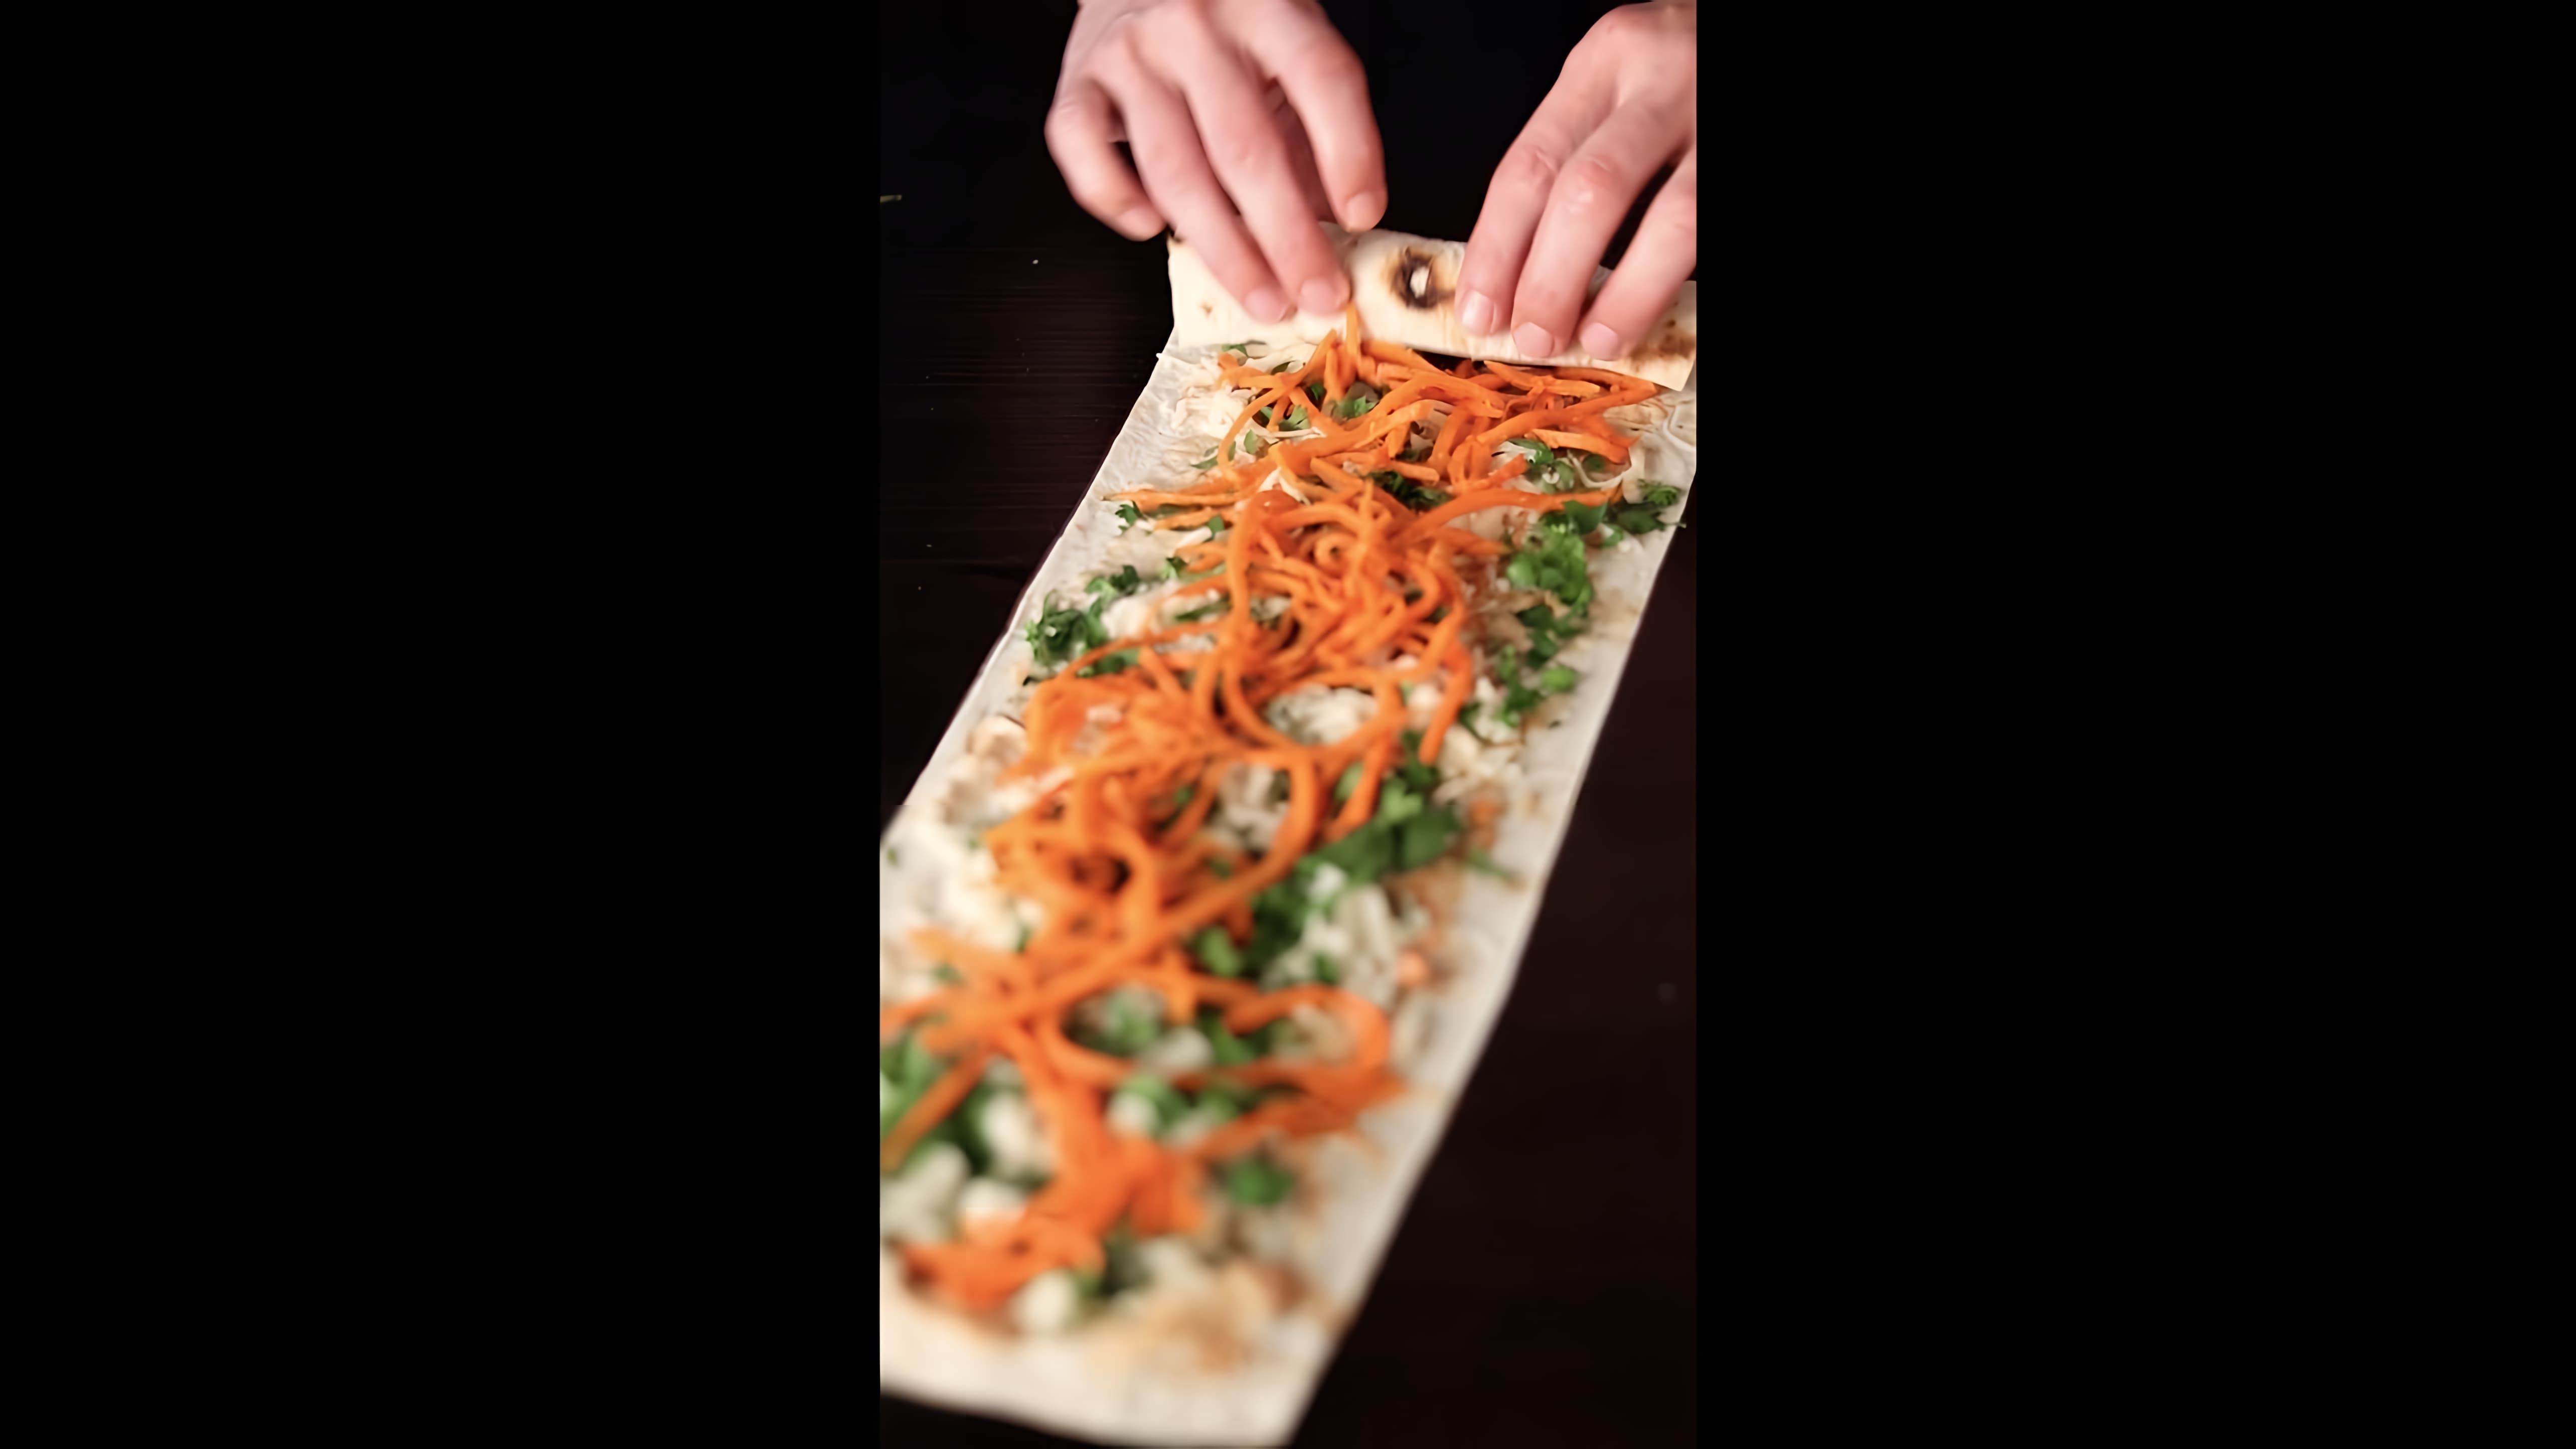 В этом видео демонстрируется простой и быстрый рецепт приготовления вкусных хрустящих сосисок в лаваше